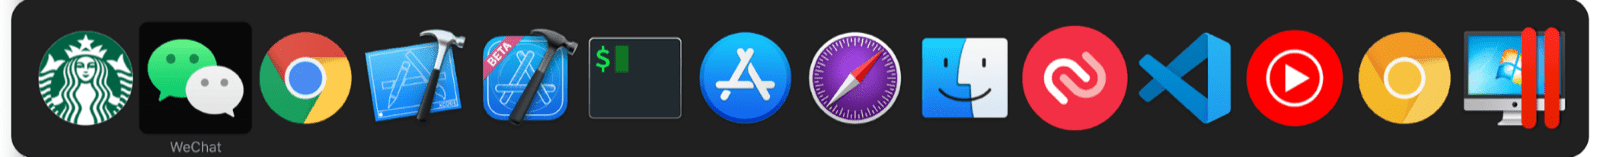 Le sélecteur multitâche de macOS inclut des mini-applications en plus des applications macOS standards.